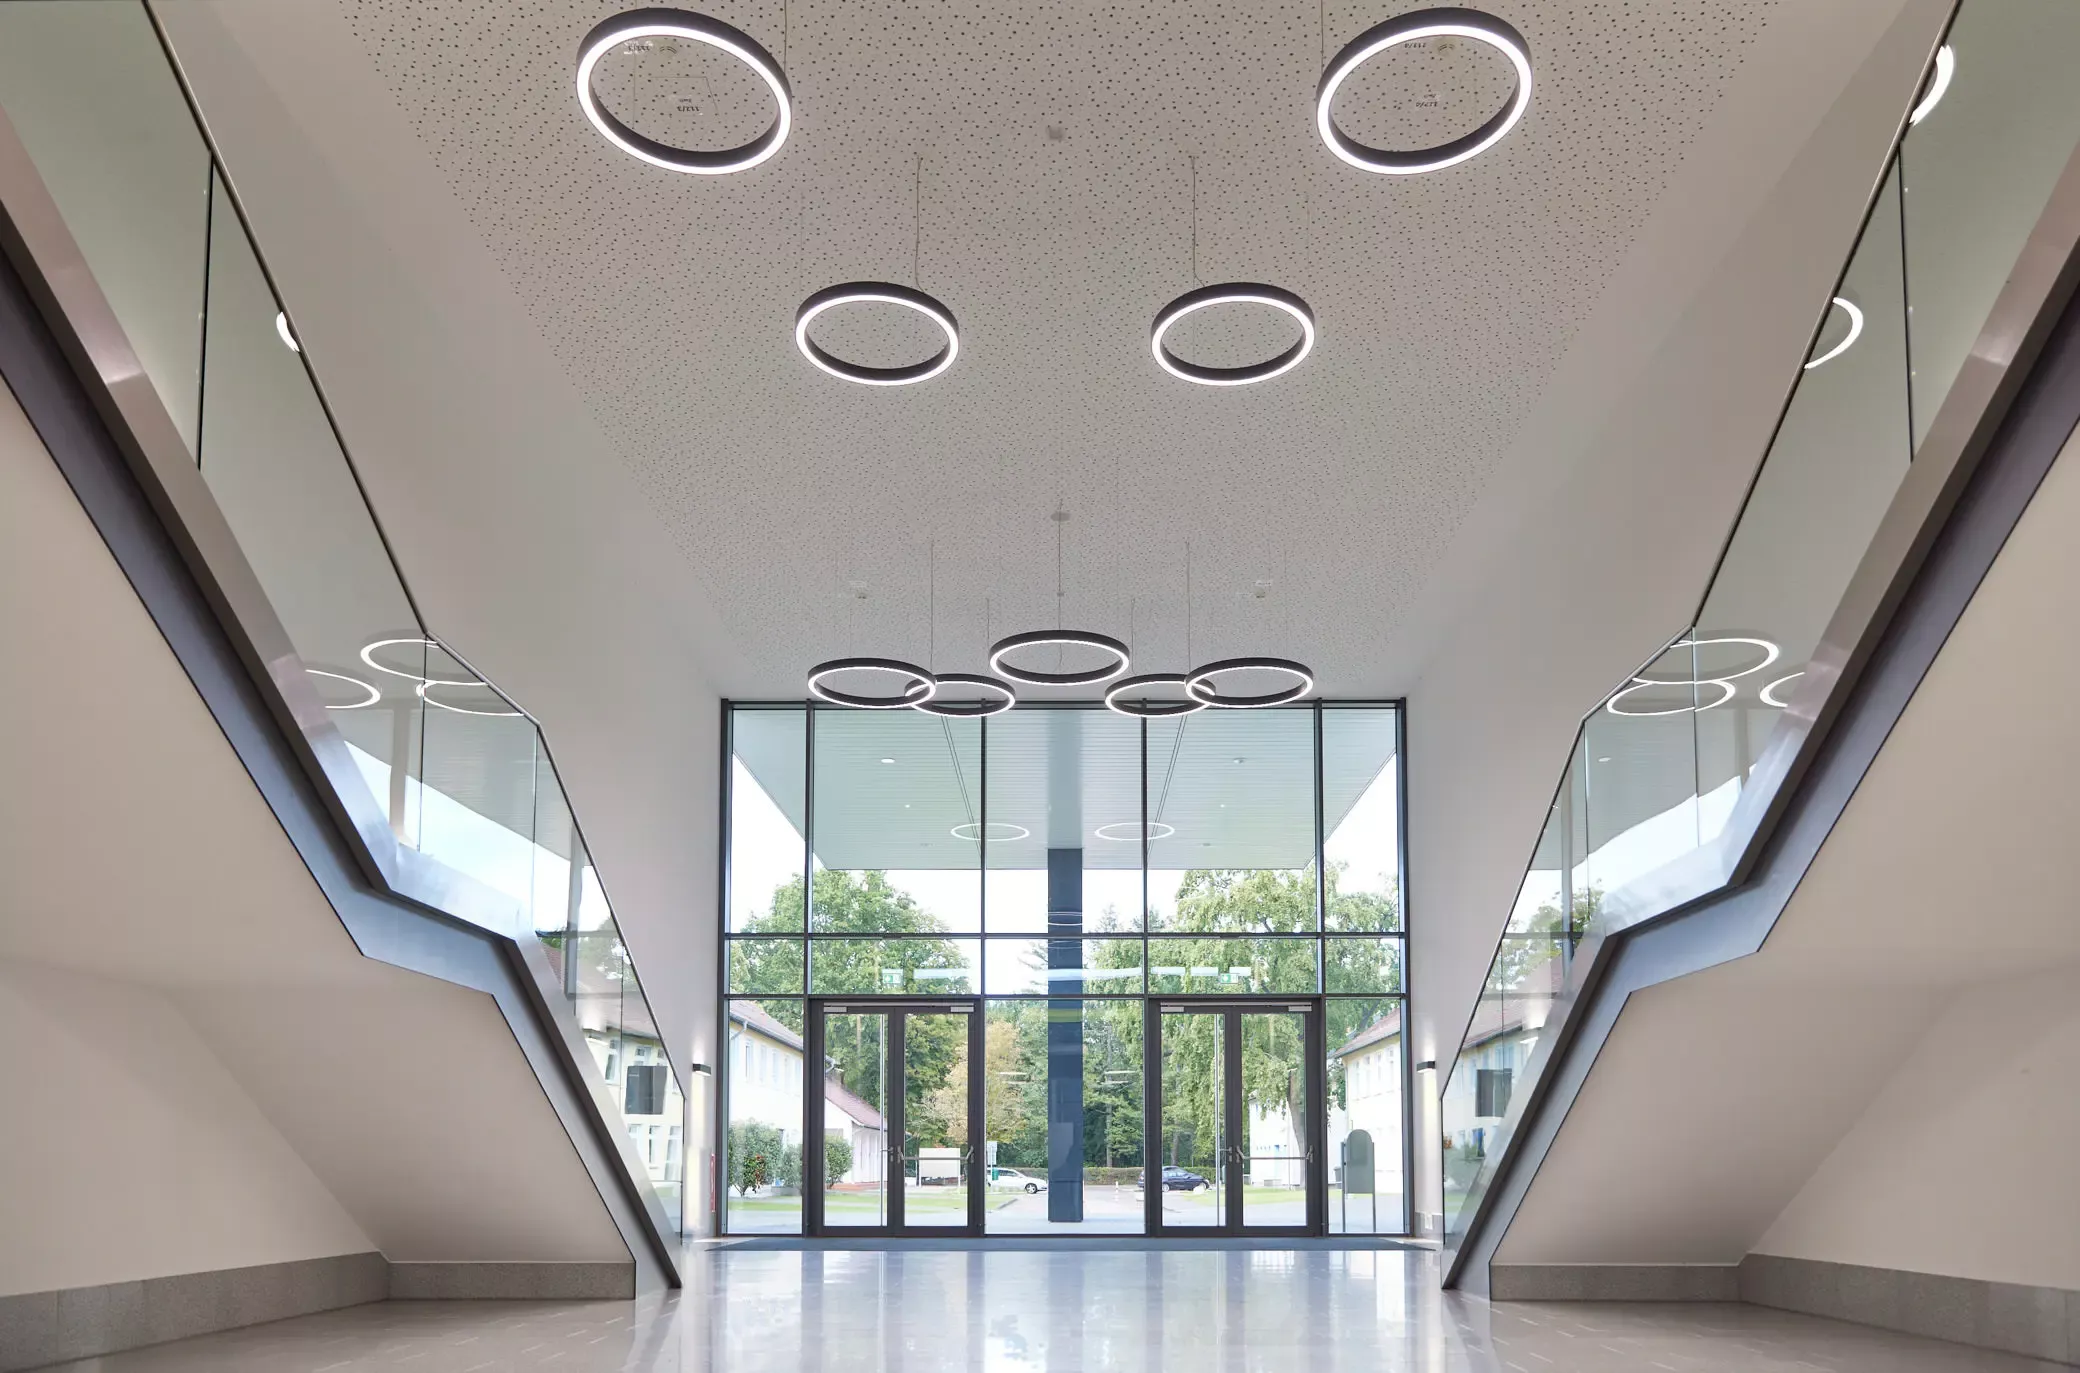 Verglaster Eingang im Foyer. Treppe mit Wandbeleuchtung. Hohe Decke mit runden Leuchten. Ein Projekt von EPU ARCHITEKTEN.